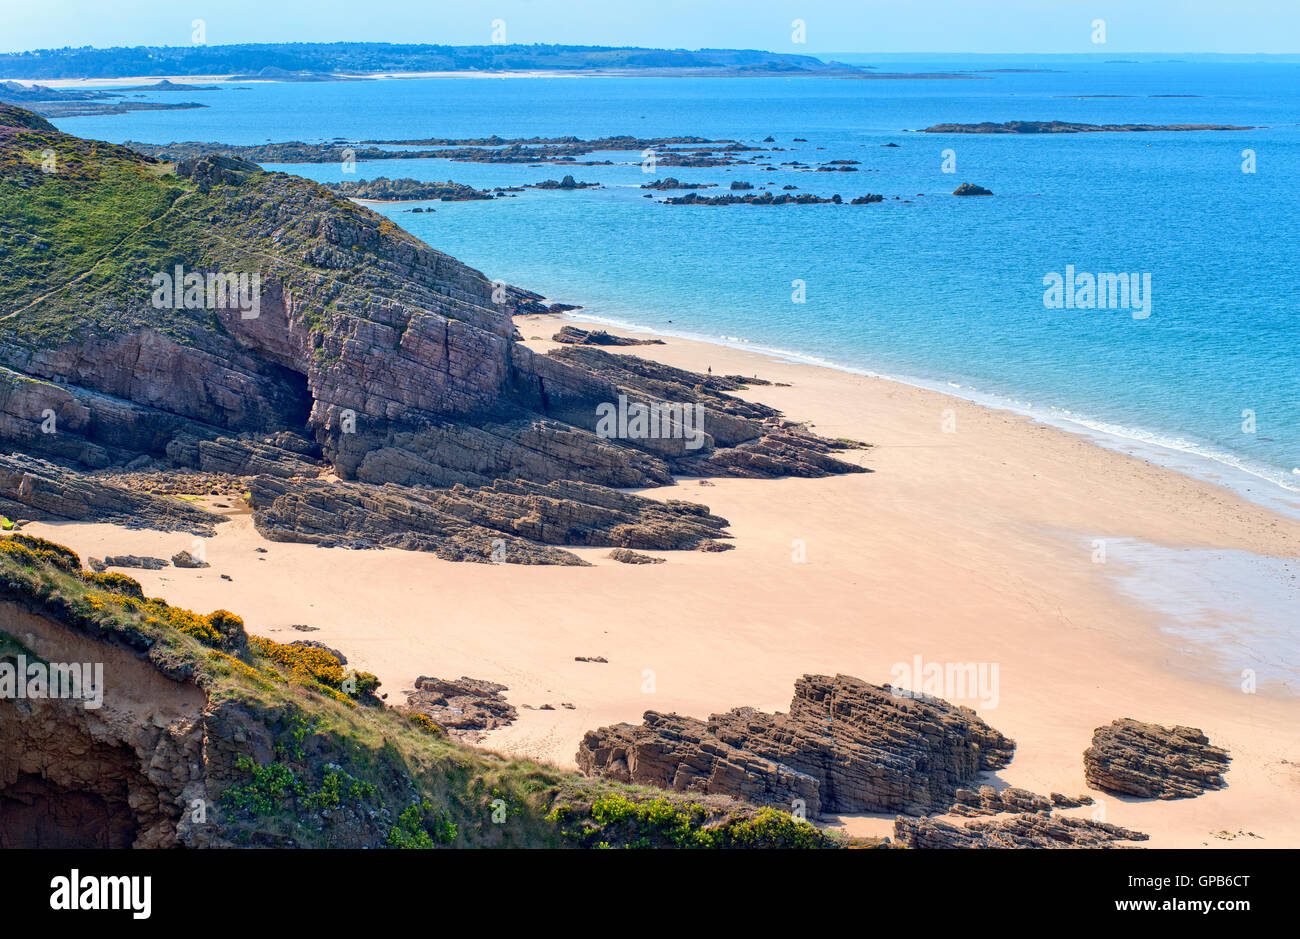 Les roches sombres sur une plage de sable de la côte atlantique à la Côte de Granit Rose en Bretagne, France Banque D'Images